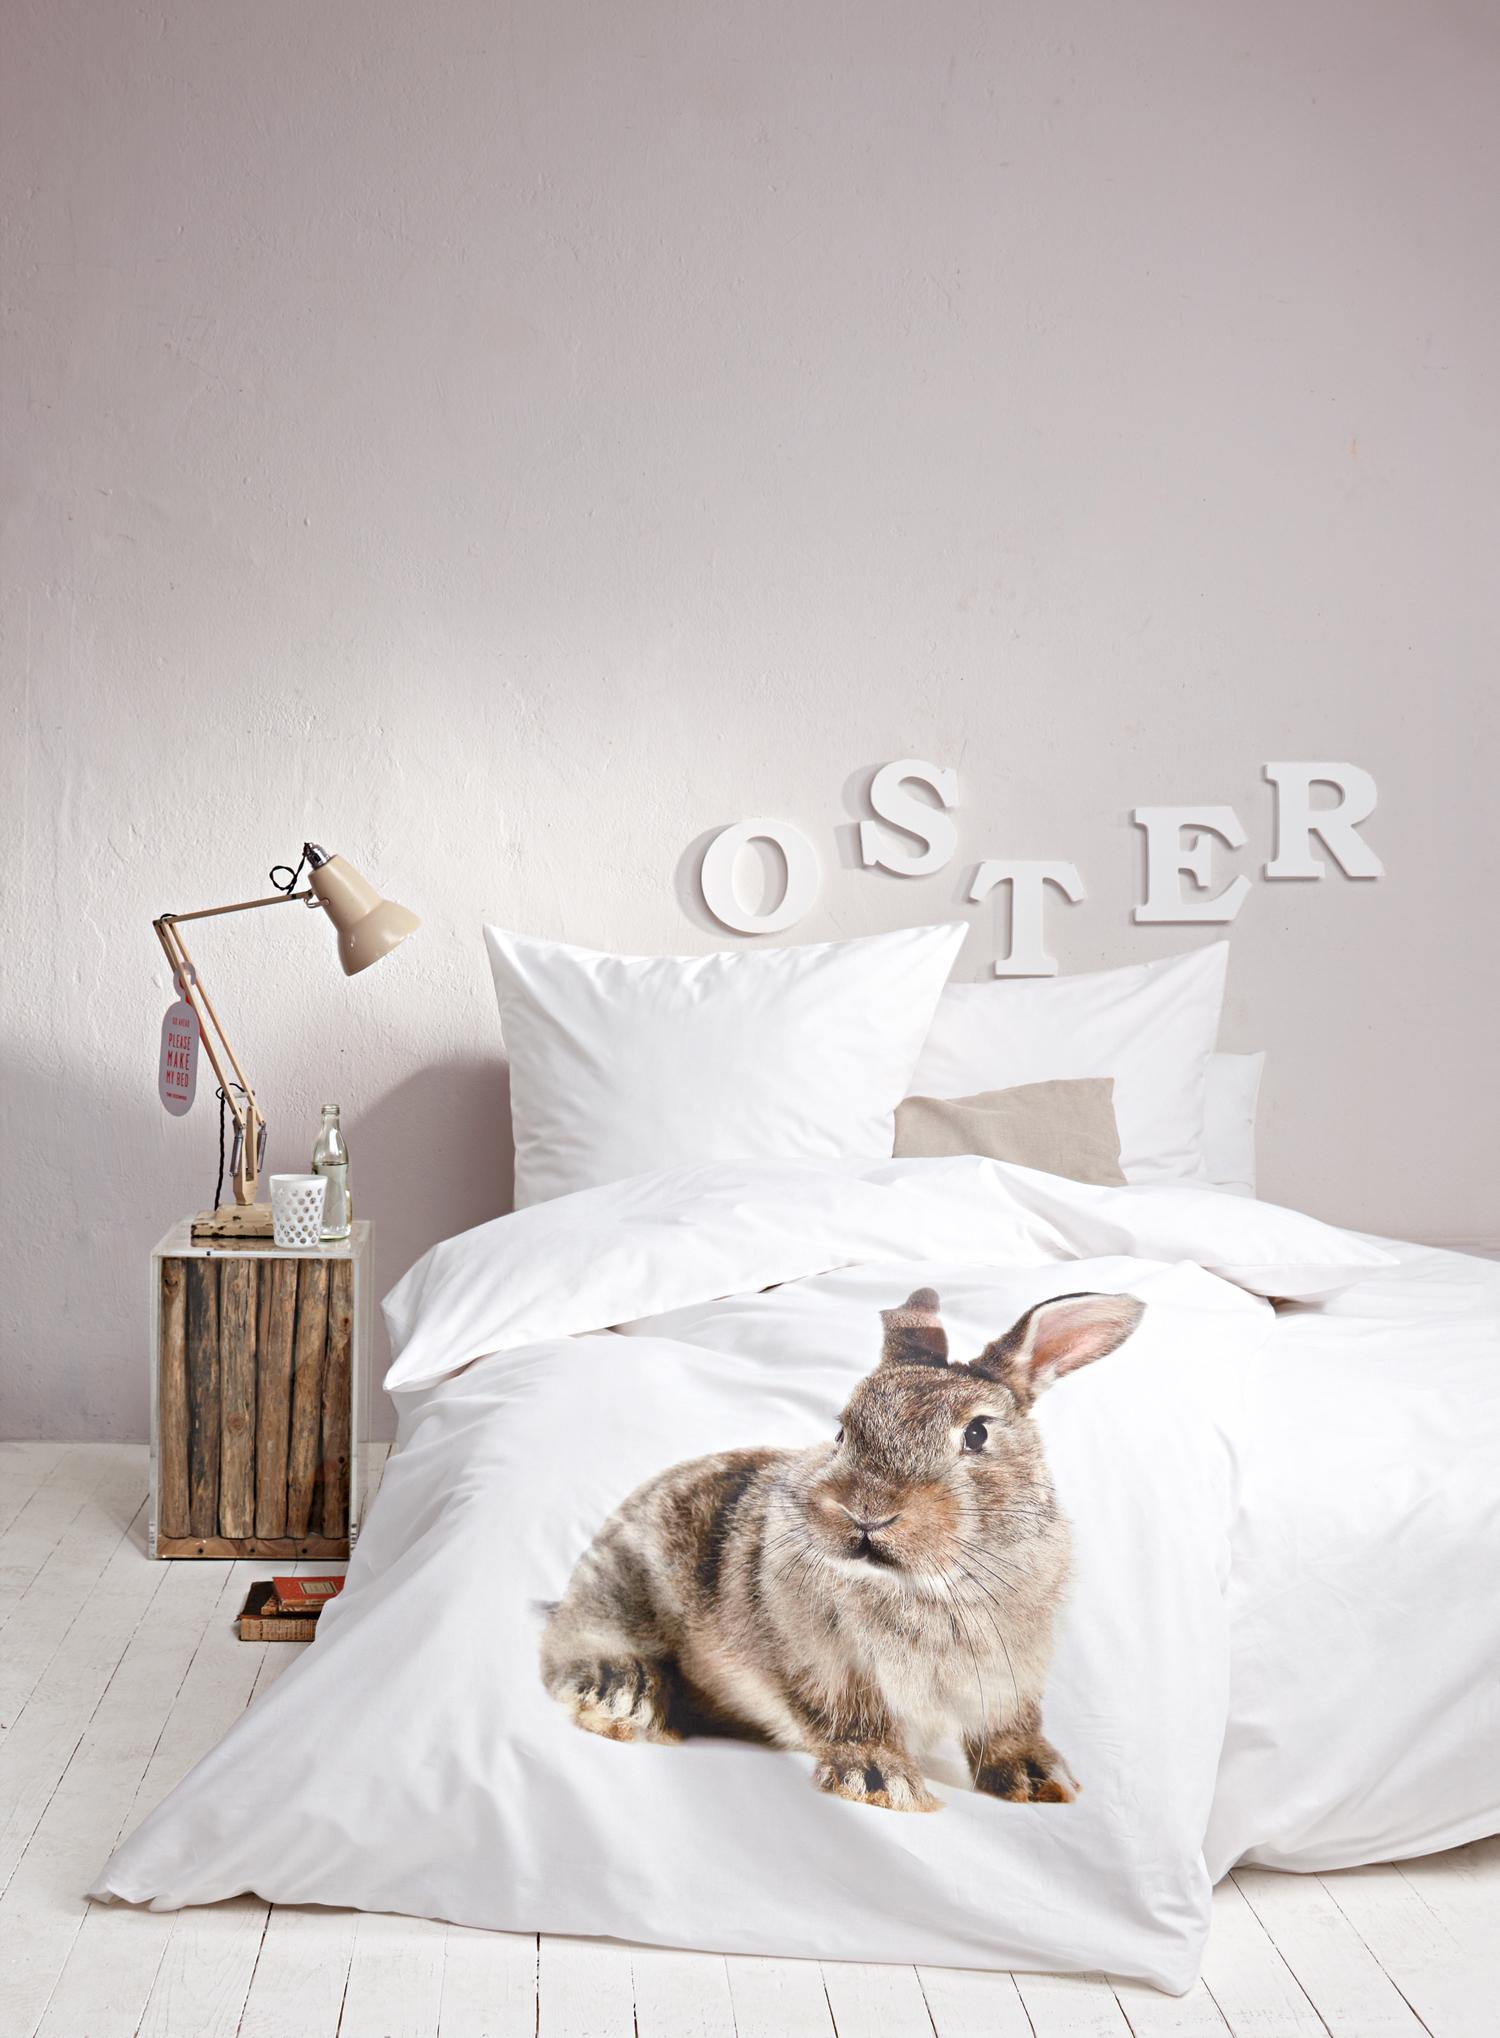 Kaninchenbettwäsche zu Ostern #bettwäsche #grauewandfarbe #osterdeko #ostergeschenk ©Impressionen